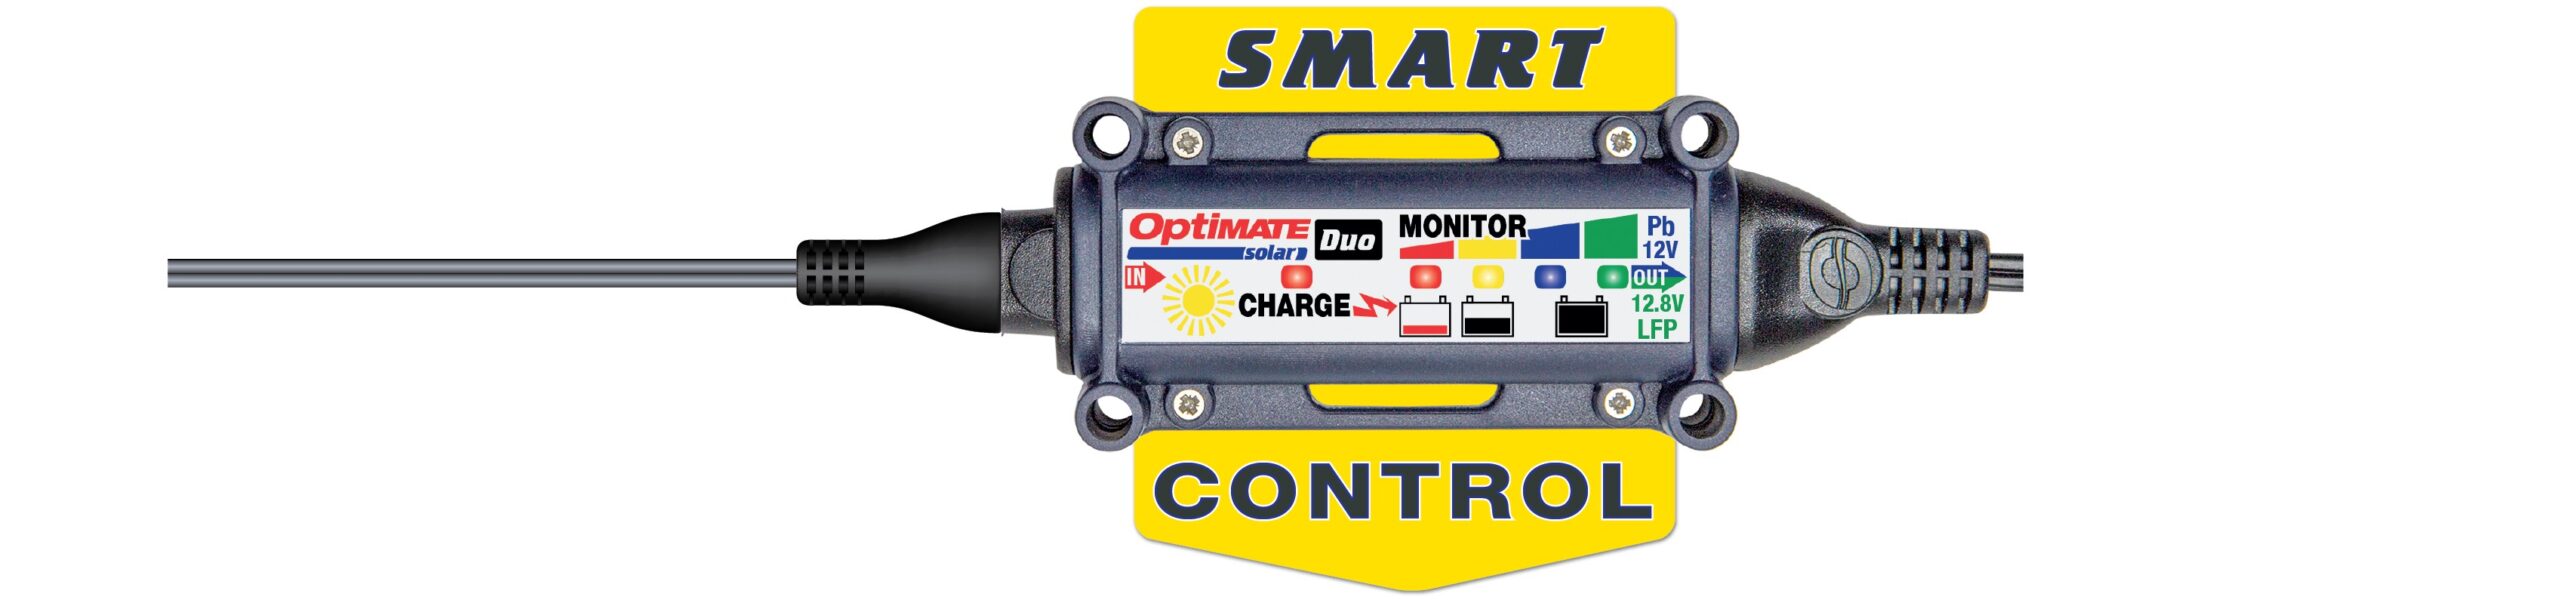 Le contrôleur de charge intelligent ajuste automatiquement la charge en fonction du type et de l’état de la batterie